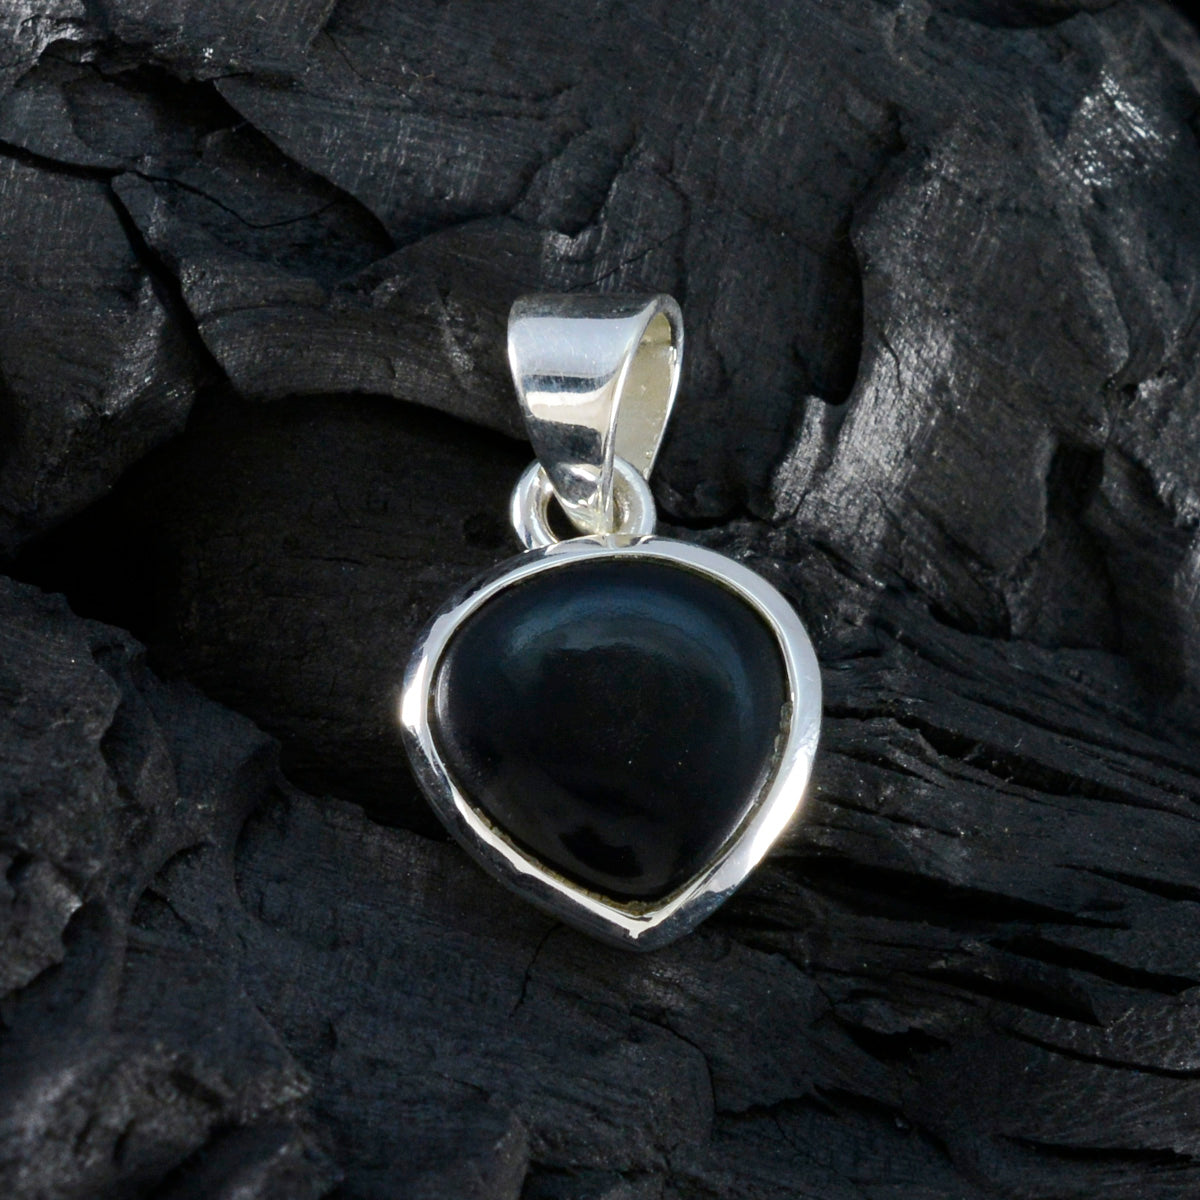 riyo elegante ciondolo con pietra preziosa a forma di cuore cabochon in argento sterling 931 con onice nero nero, regalo per la festa degli insegnanti